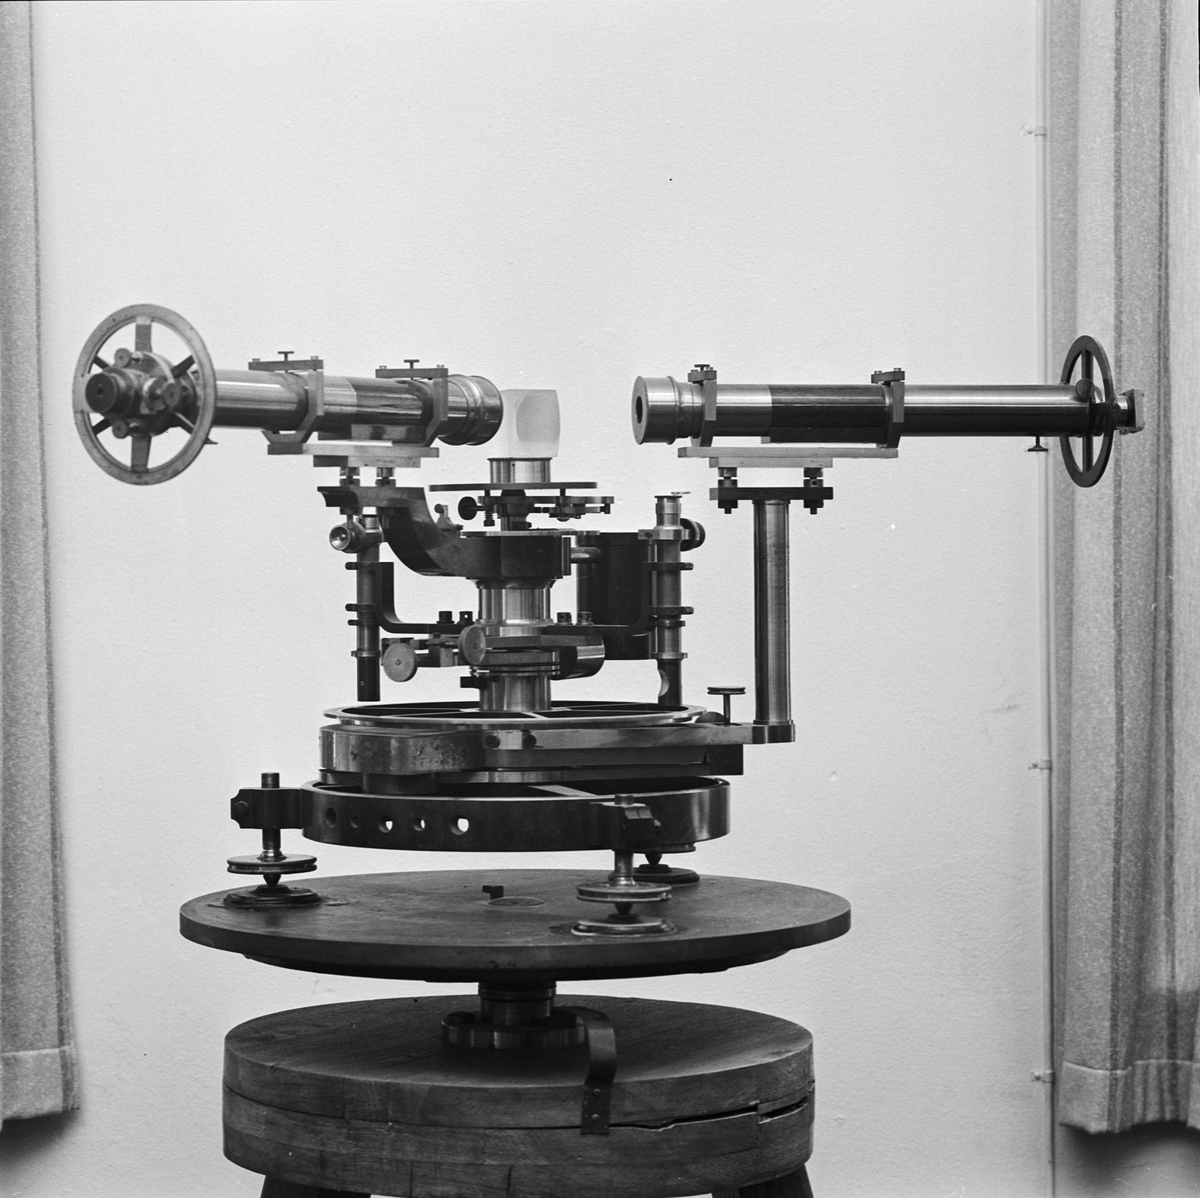 Fysikum, Ångströms spektrometer, Uppsala 1964